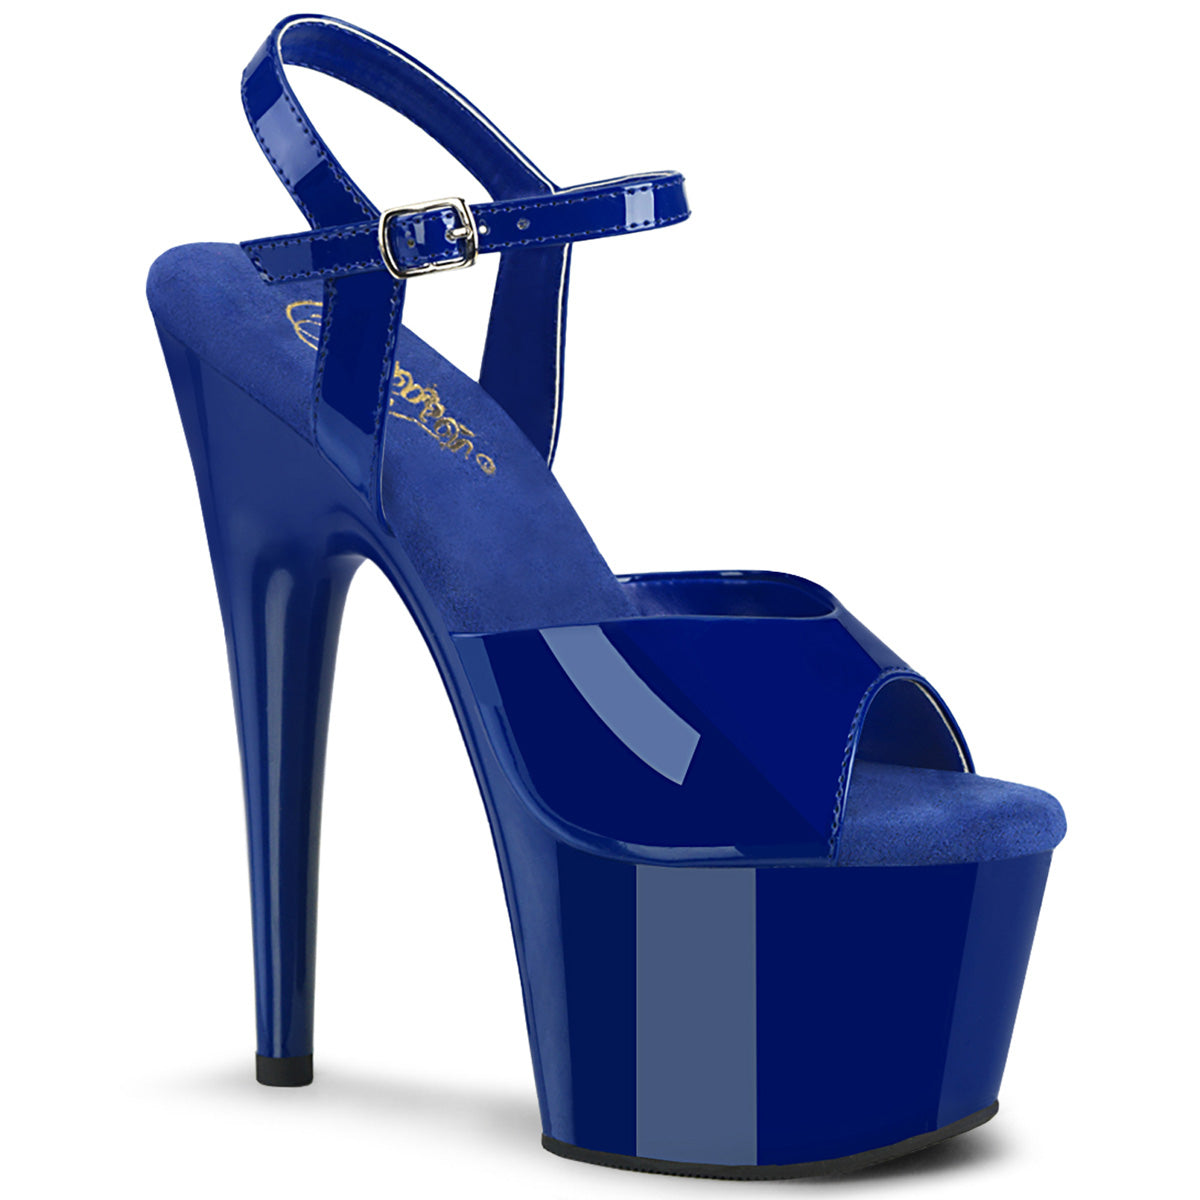 Pleaser  Sandals ADORE-709 Royal Blue Pat/Royal Blue